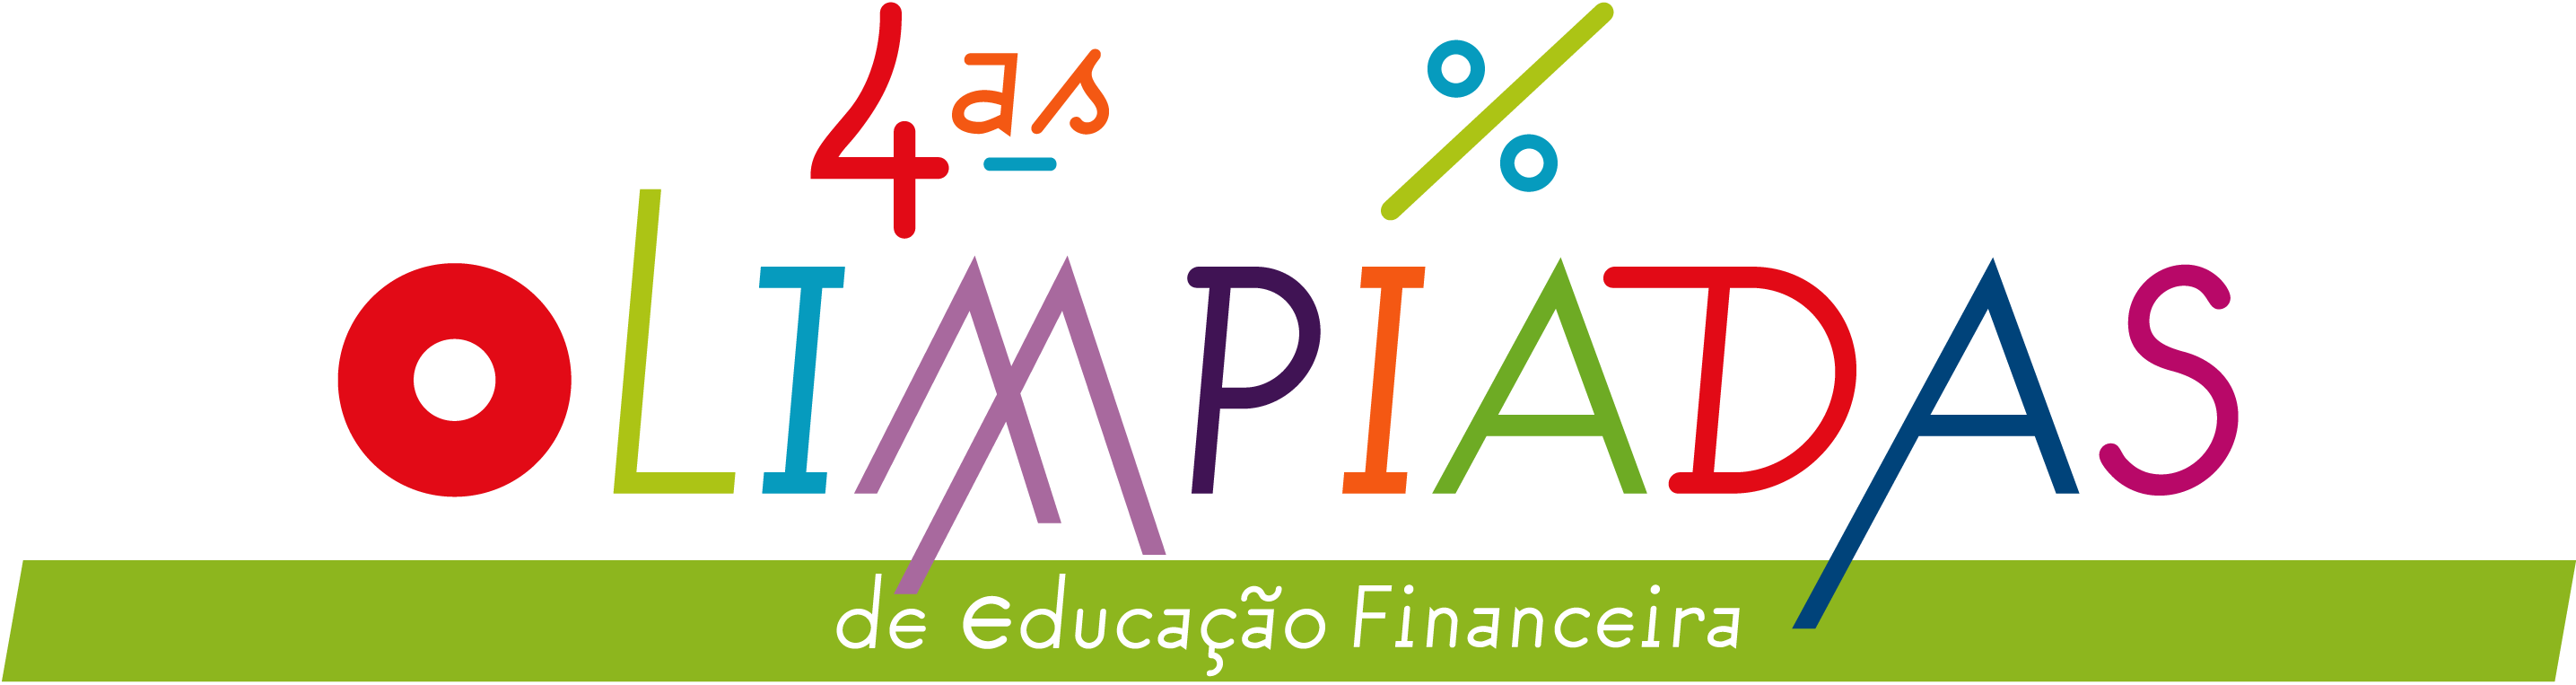 Olimpíadas de Educação Financeira - jogo on line